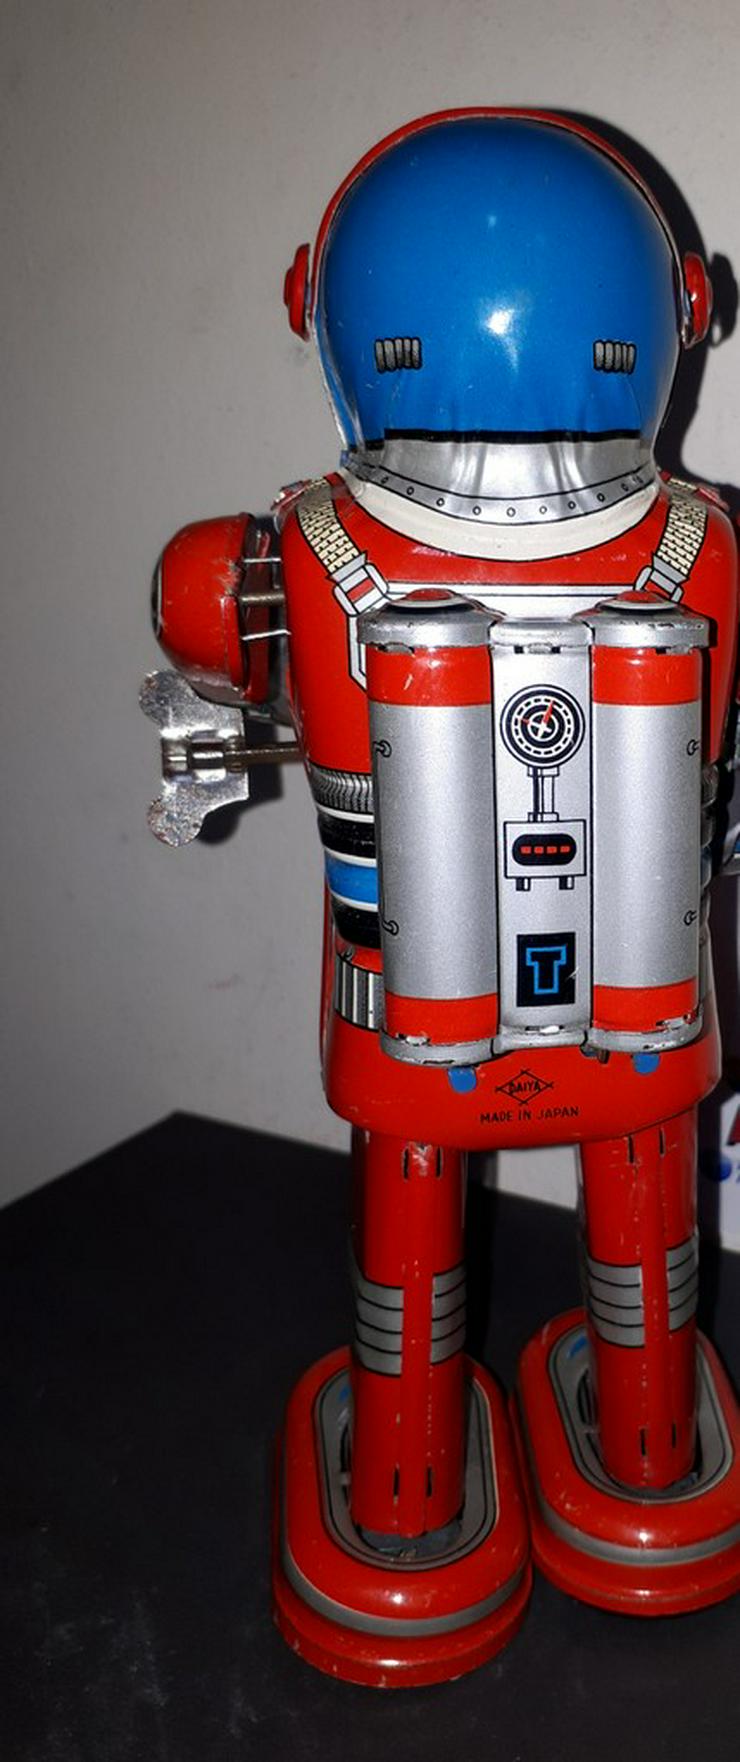 Bild 5: MOON ASTRONAUT DAIYA JAPAN robot